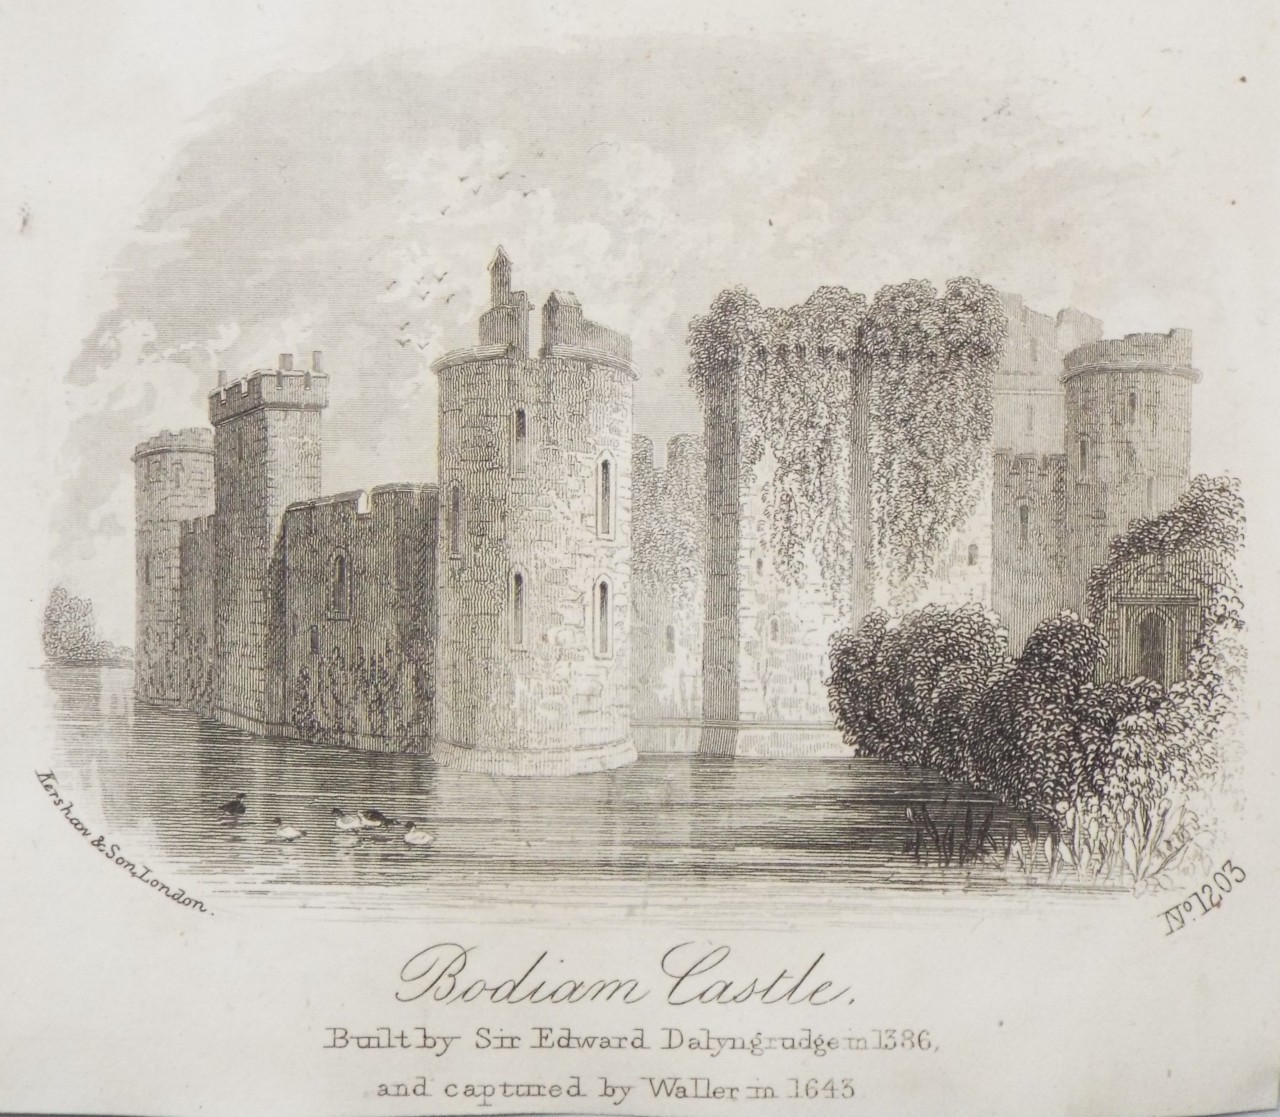 Steel Vignette - Bodiam Castle. - Kershaw